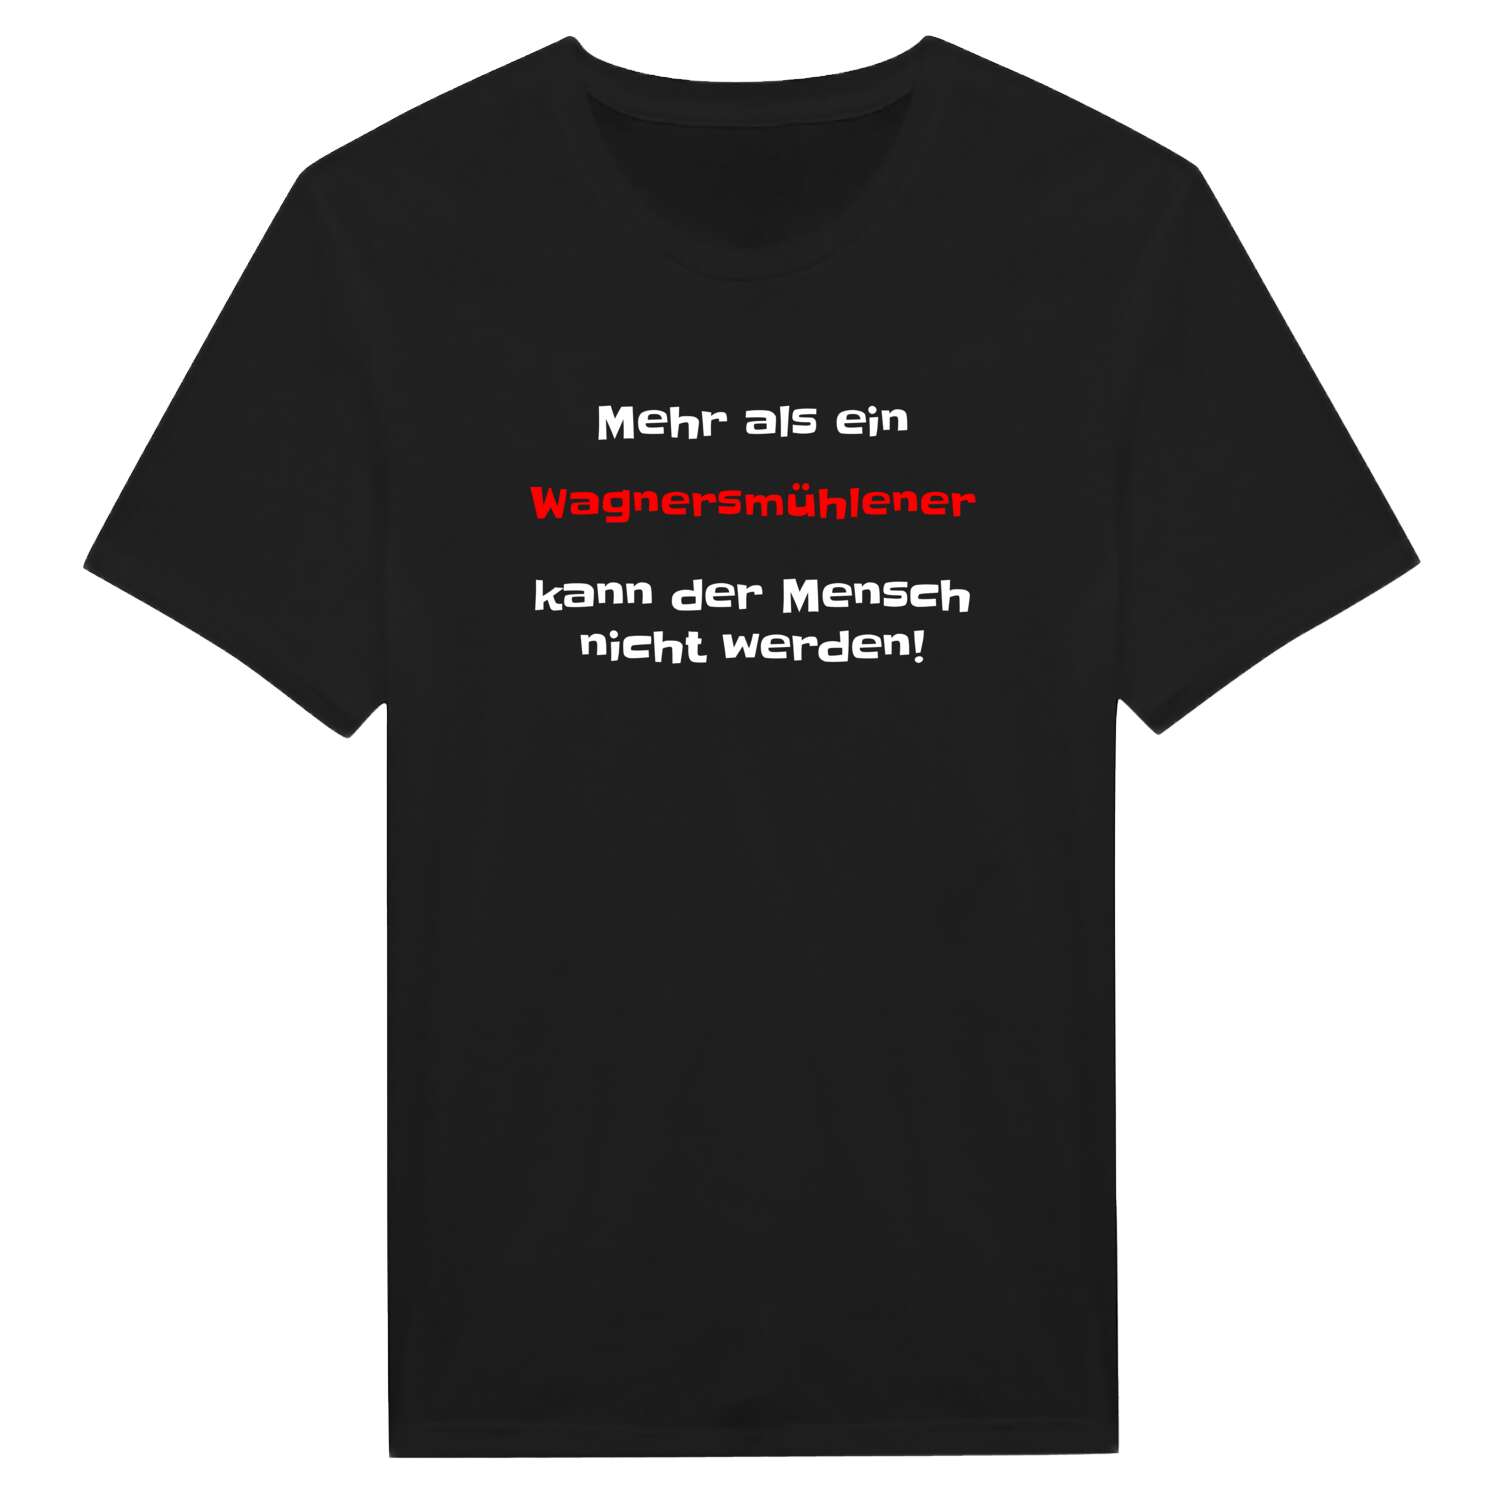 Wagnersmühle T-Shirt »Mehr als ein«